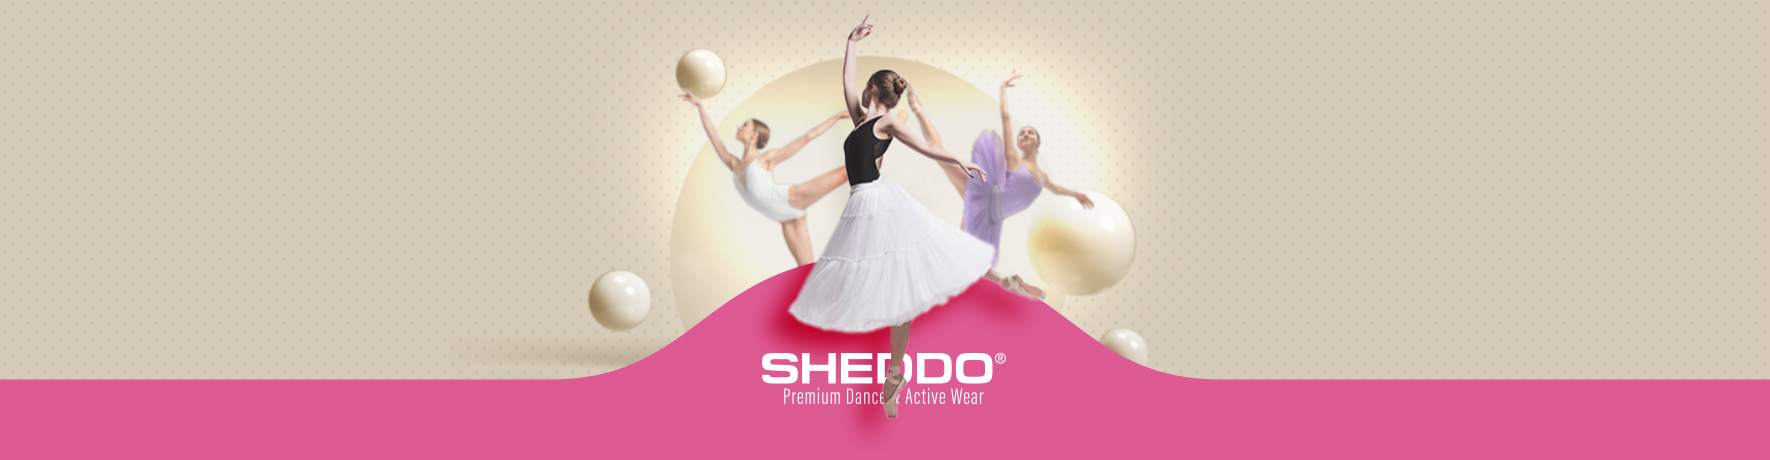 Sheddo® Dance & Active Wear